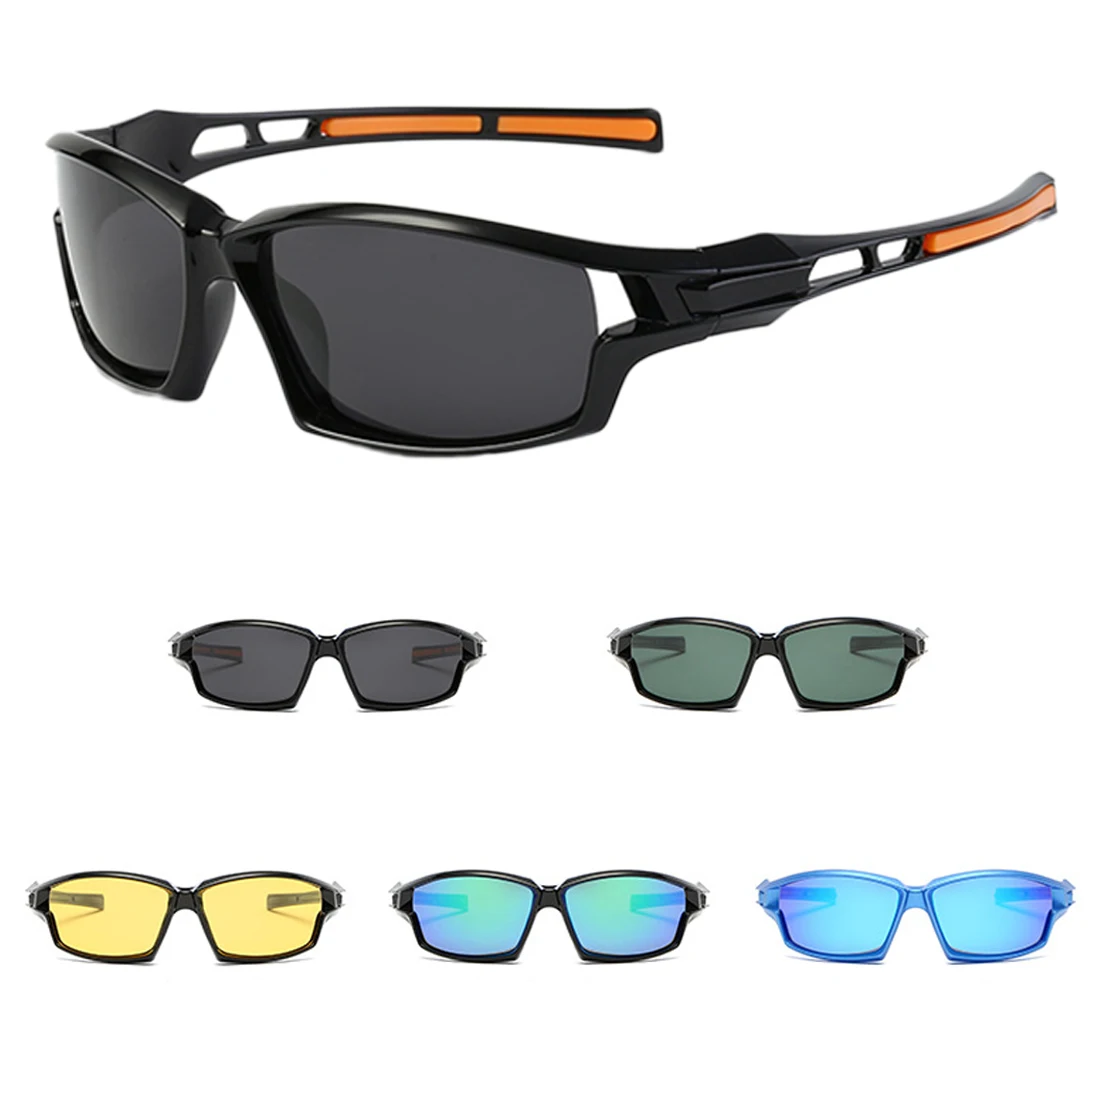 Поляризационные солнцезащитные очки для мужчин, солнцезащитные очки для пляжа, спорта на открытом воздухе, езды, вождения, мужские очки, аксессуары, очки для велосипеда